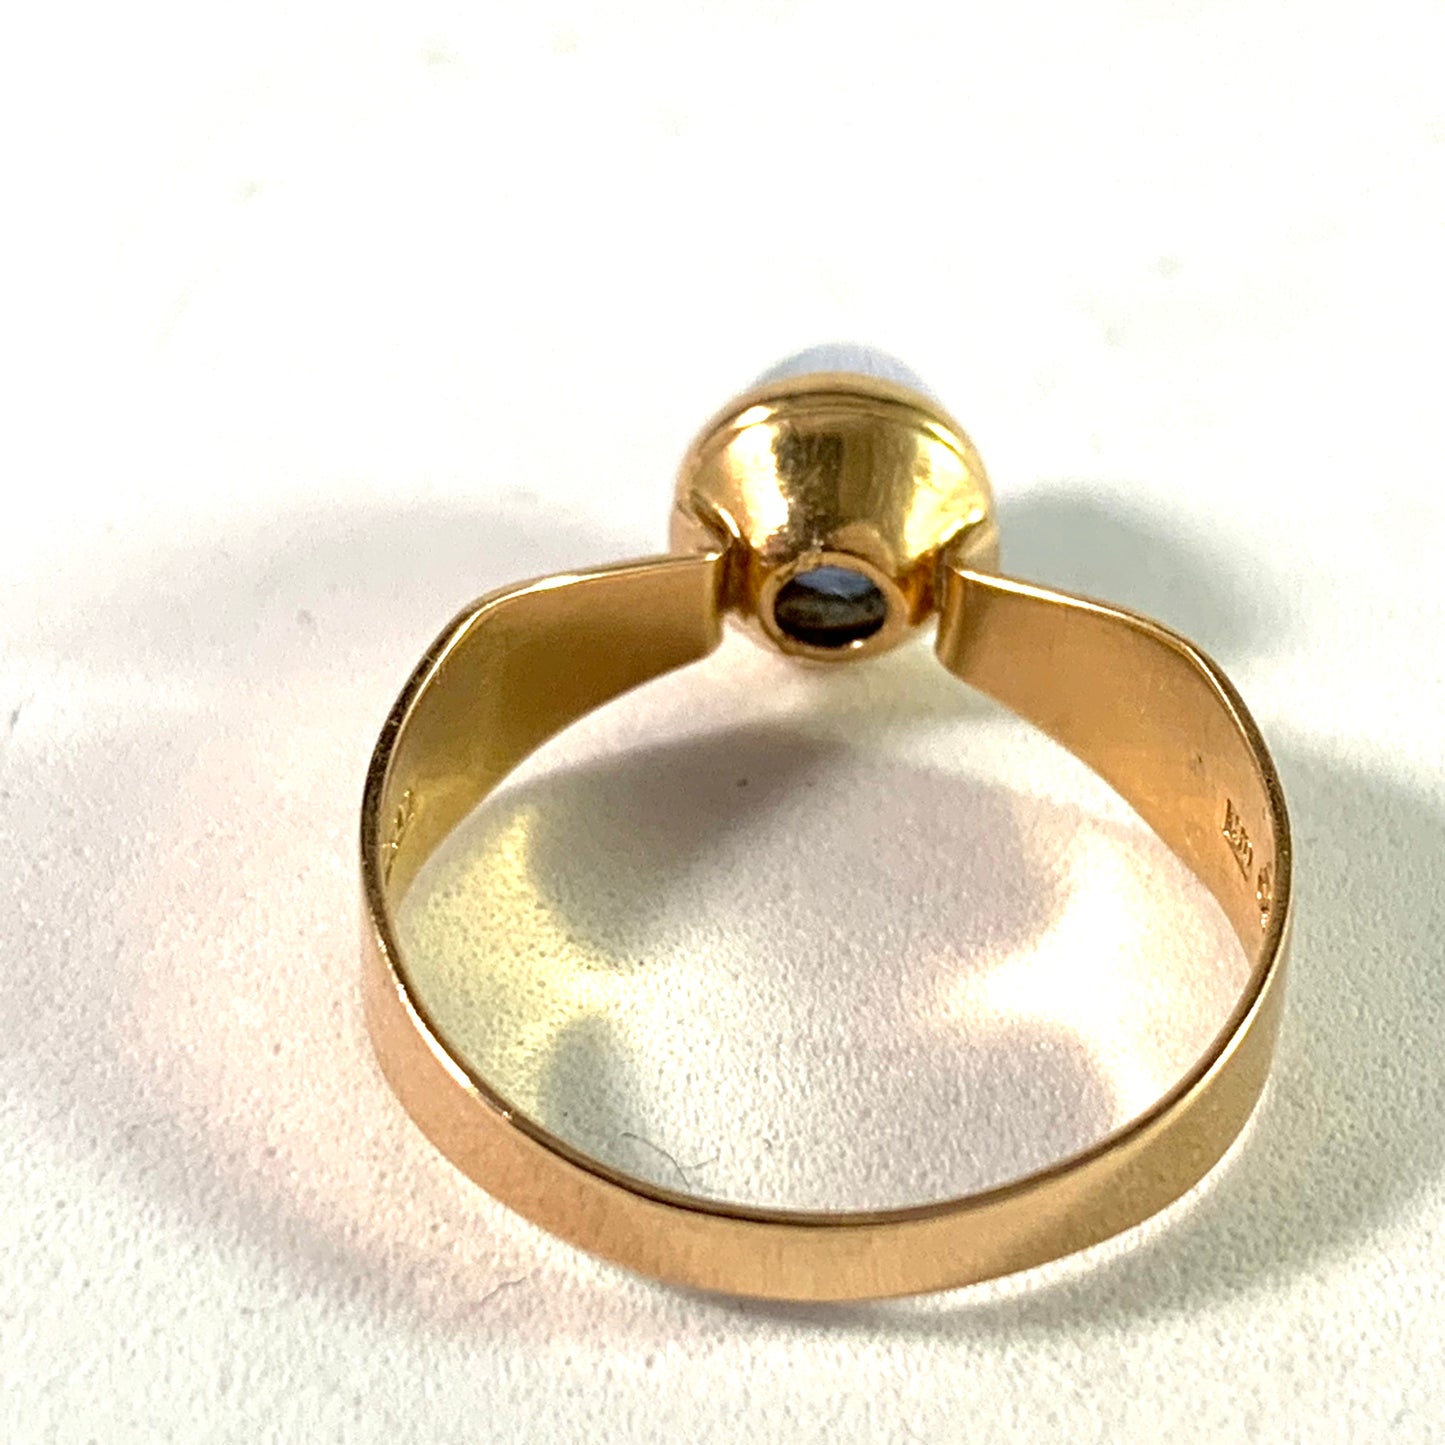 Alton, Sweden 1964 Modernist 18k Gold Spinel Ring.